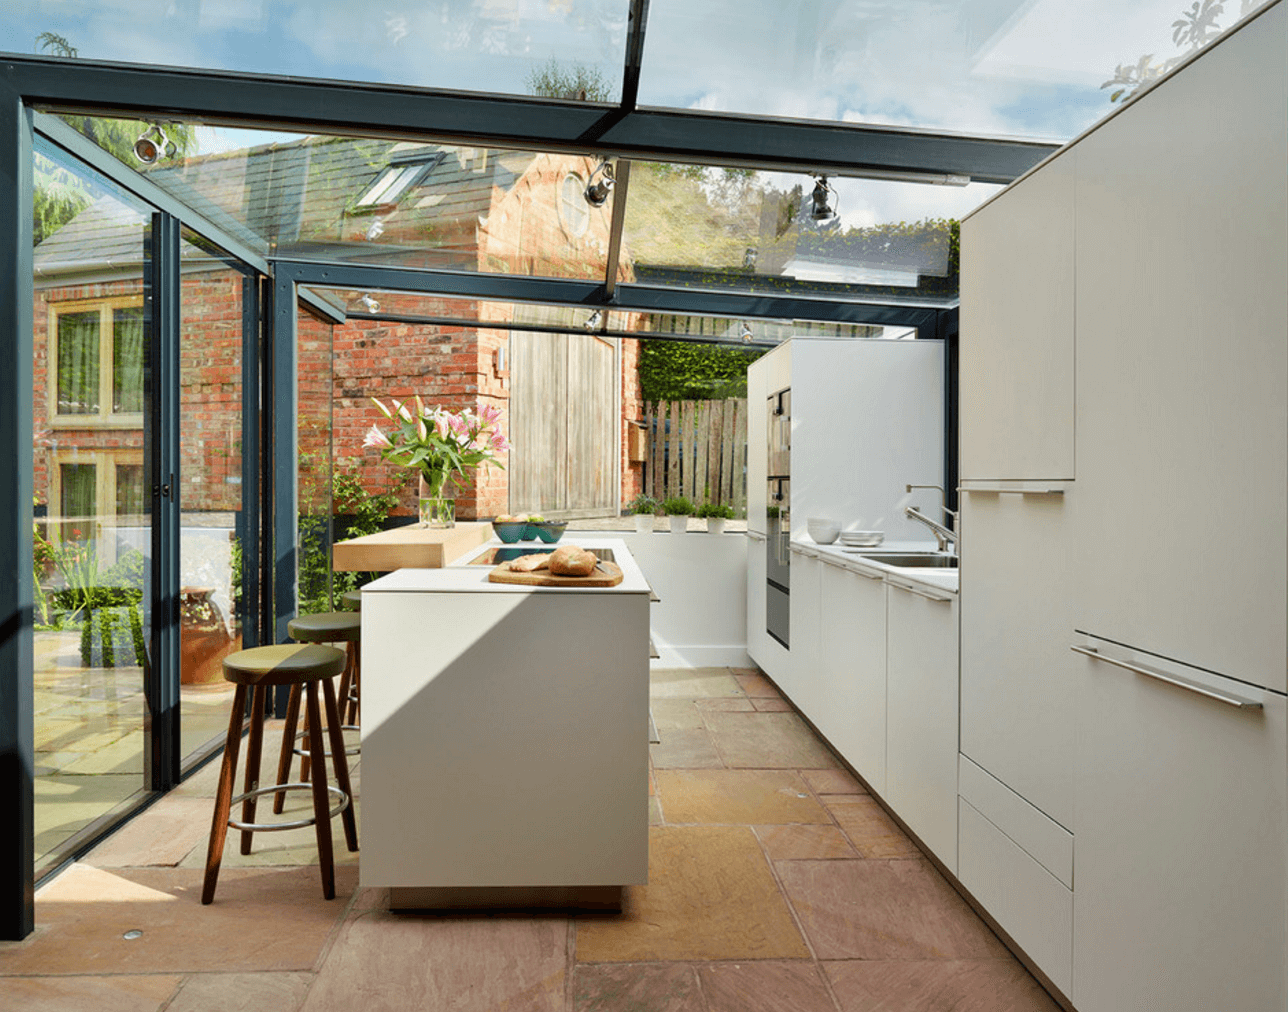 آشپزخانه مدرن، آشپزخانه زیبا و خلاقانه در خانه روستایی انگلیسی